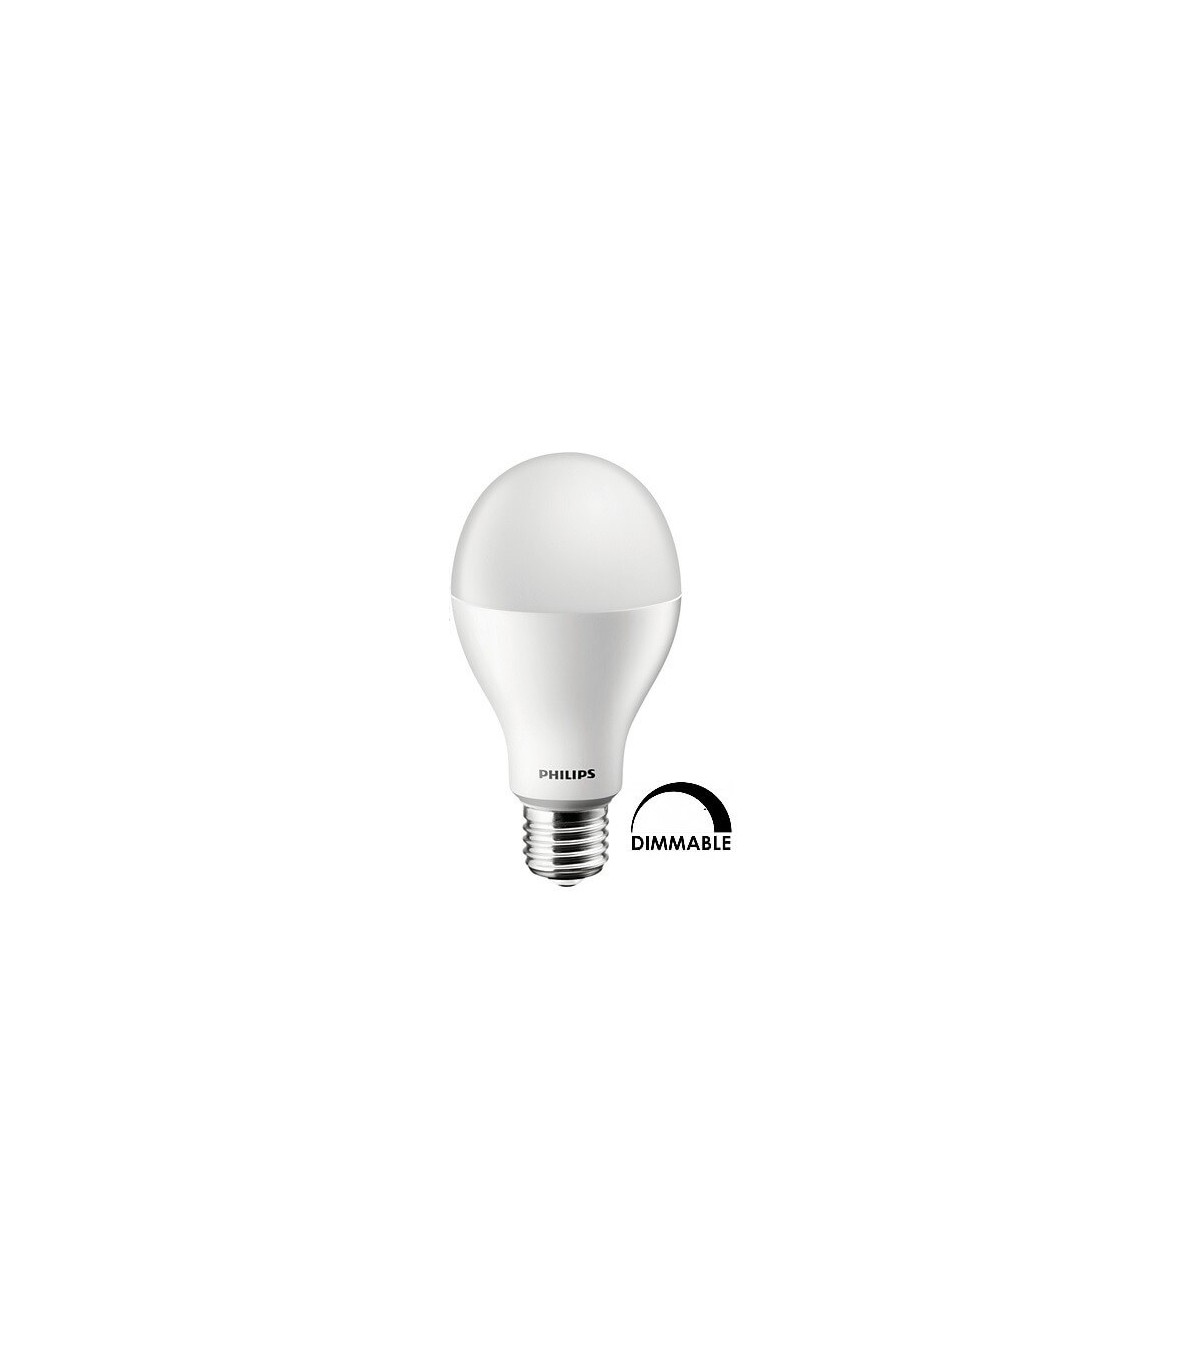 Philips CorePro LEDbulb D dimmable puissance 16 substitut 100W 827 E27